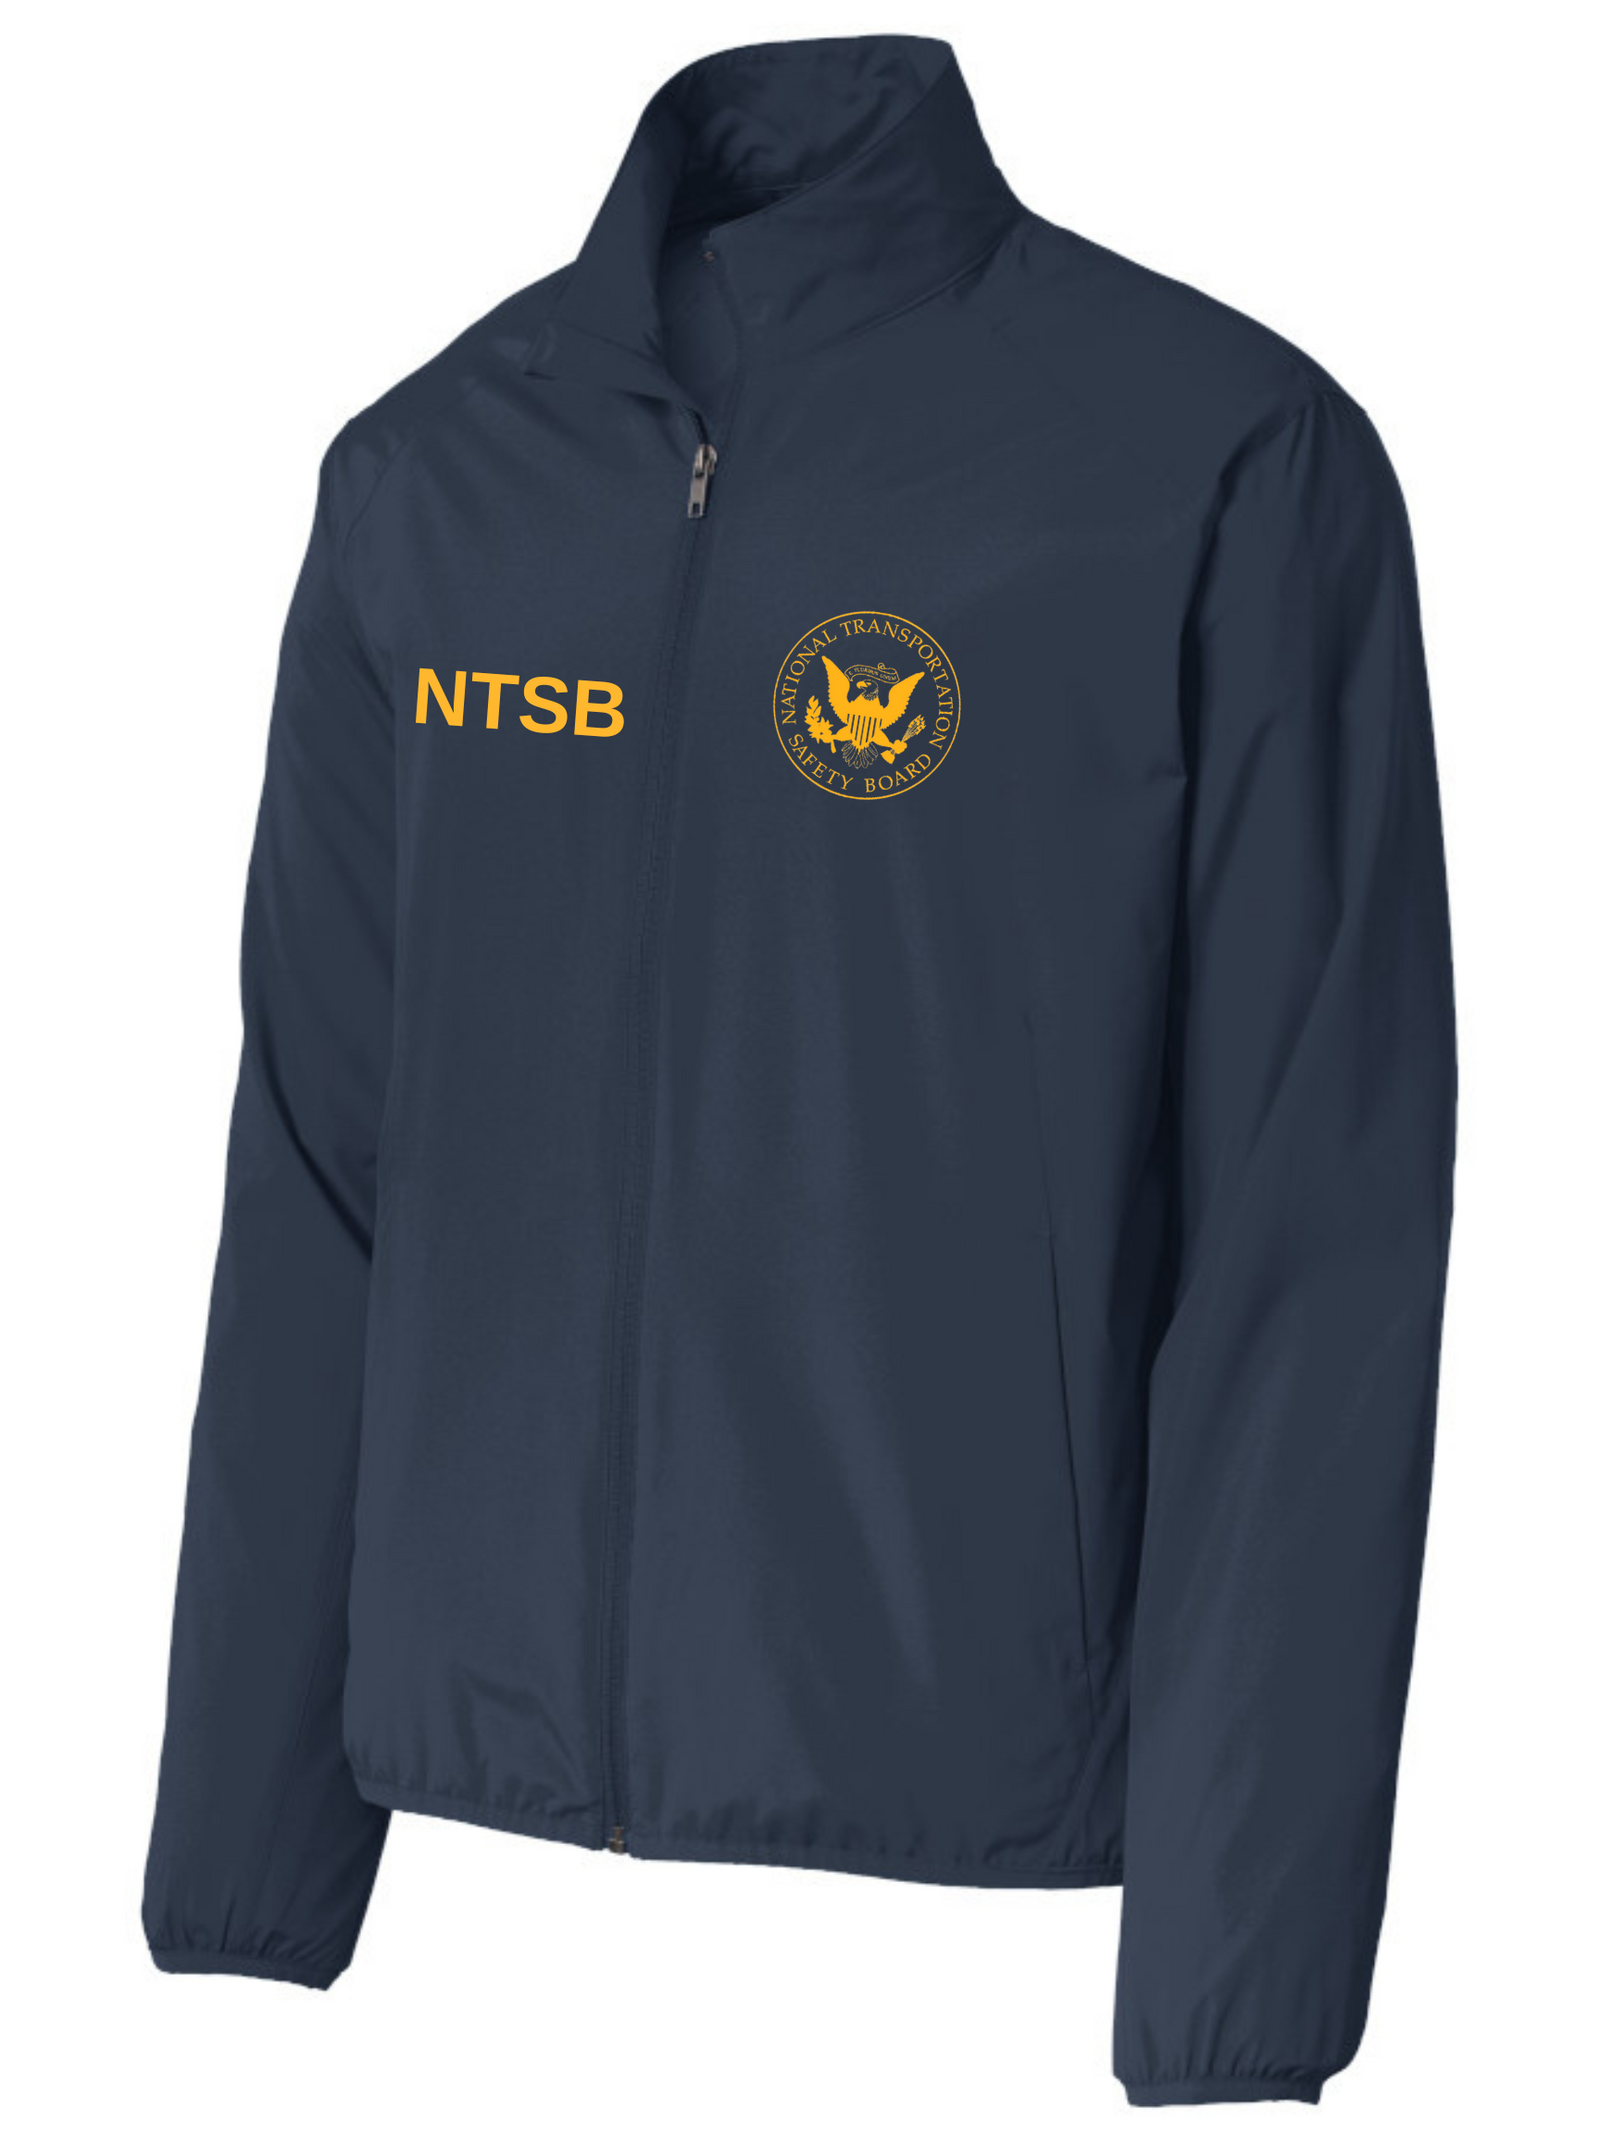 NTSB Agency Identifier Jacket | FEDS Apparel